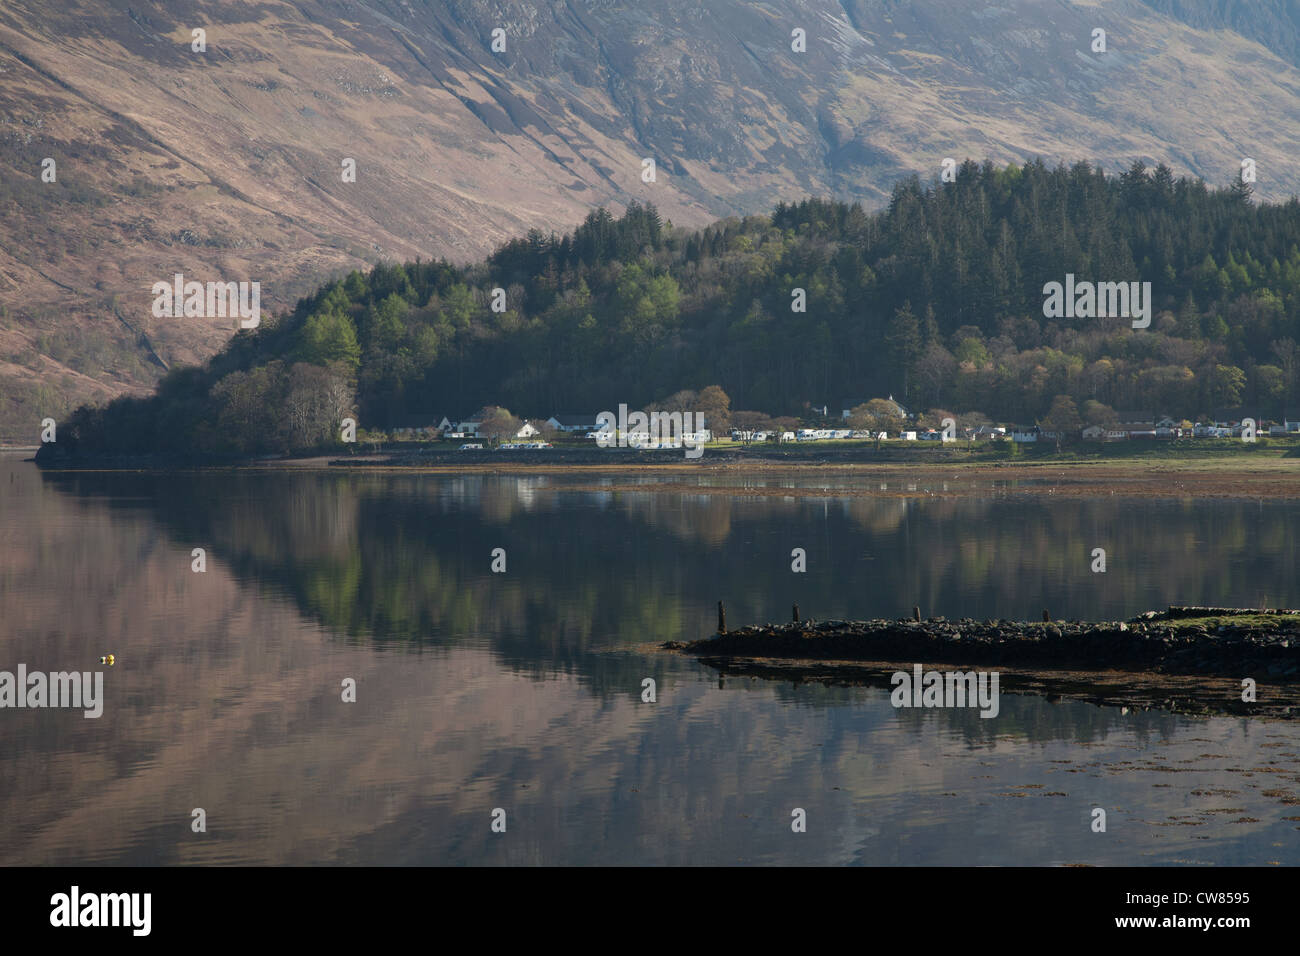 Loch Leven, Glencoe village, Ballachulish Stock Photo